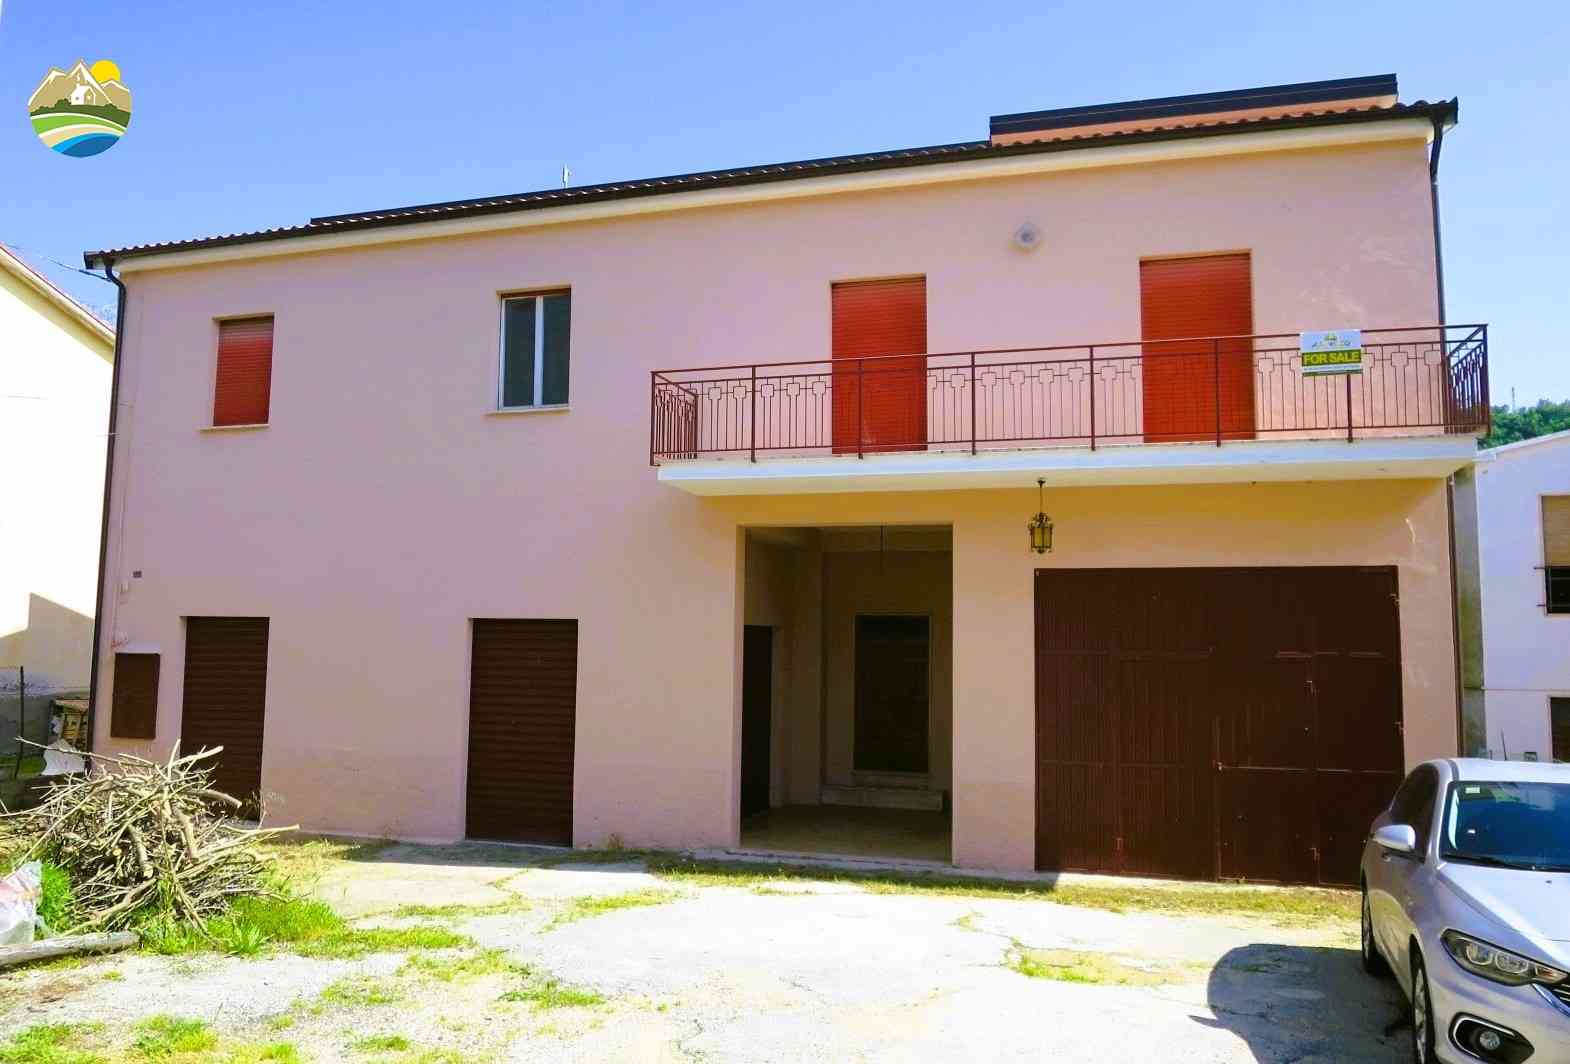 Townhouse Casa del Tiglio - Bisenti - EUR 119.035